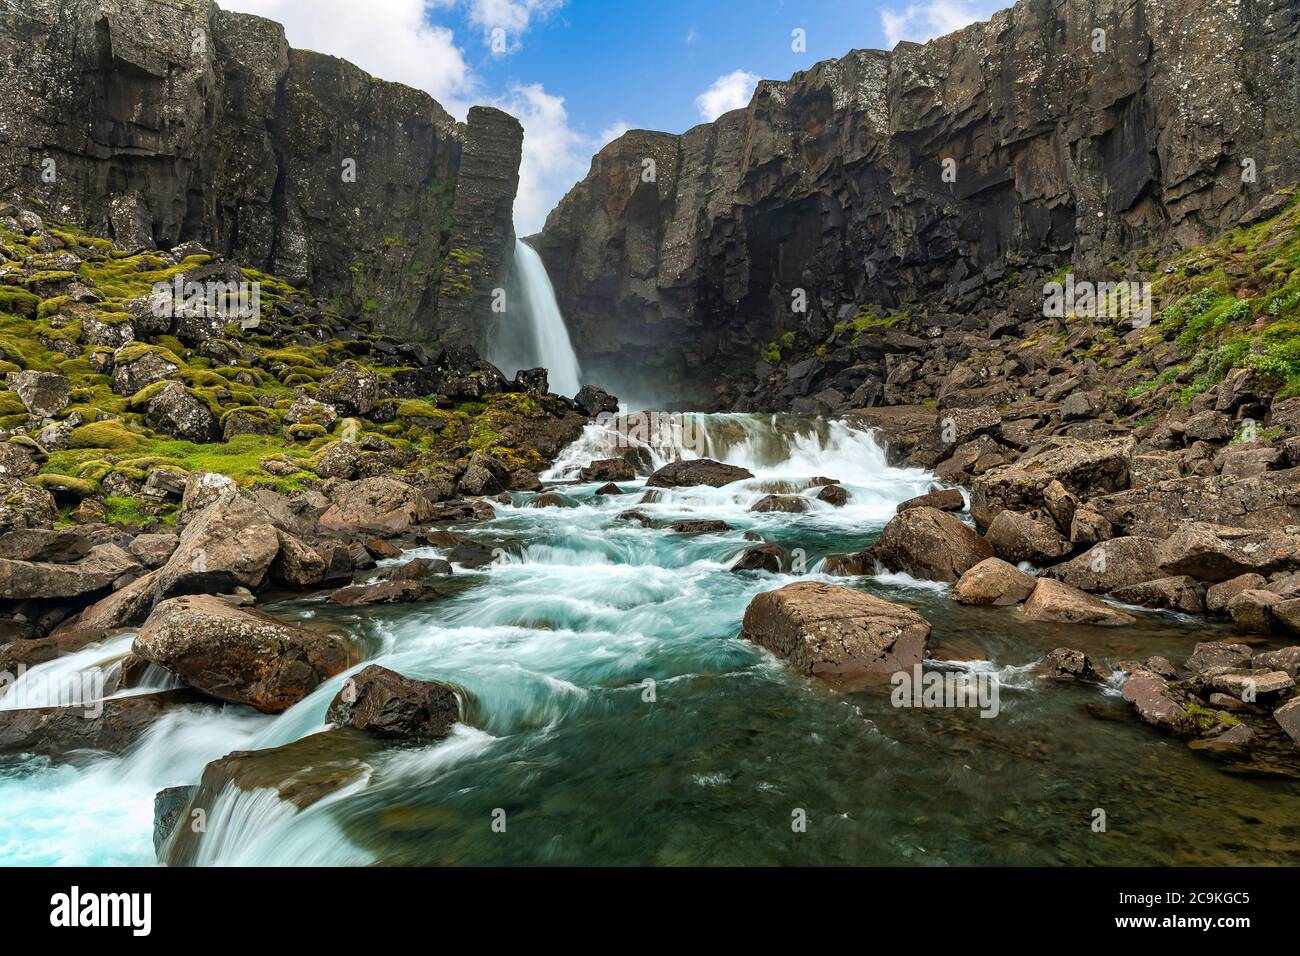 Una misteriosa cascata nascosta nella natura nella campagna islandese, montagne rocciose con muschio e torrenti turchesi. Che ha un flusso potente. Foto Stock